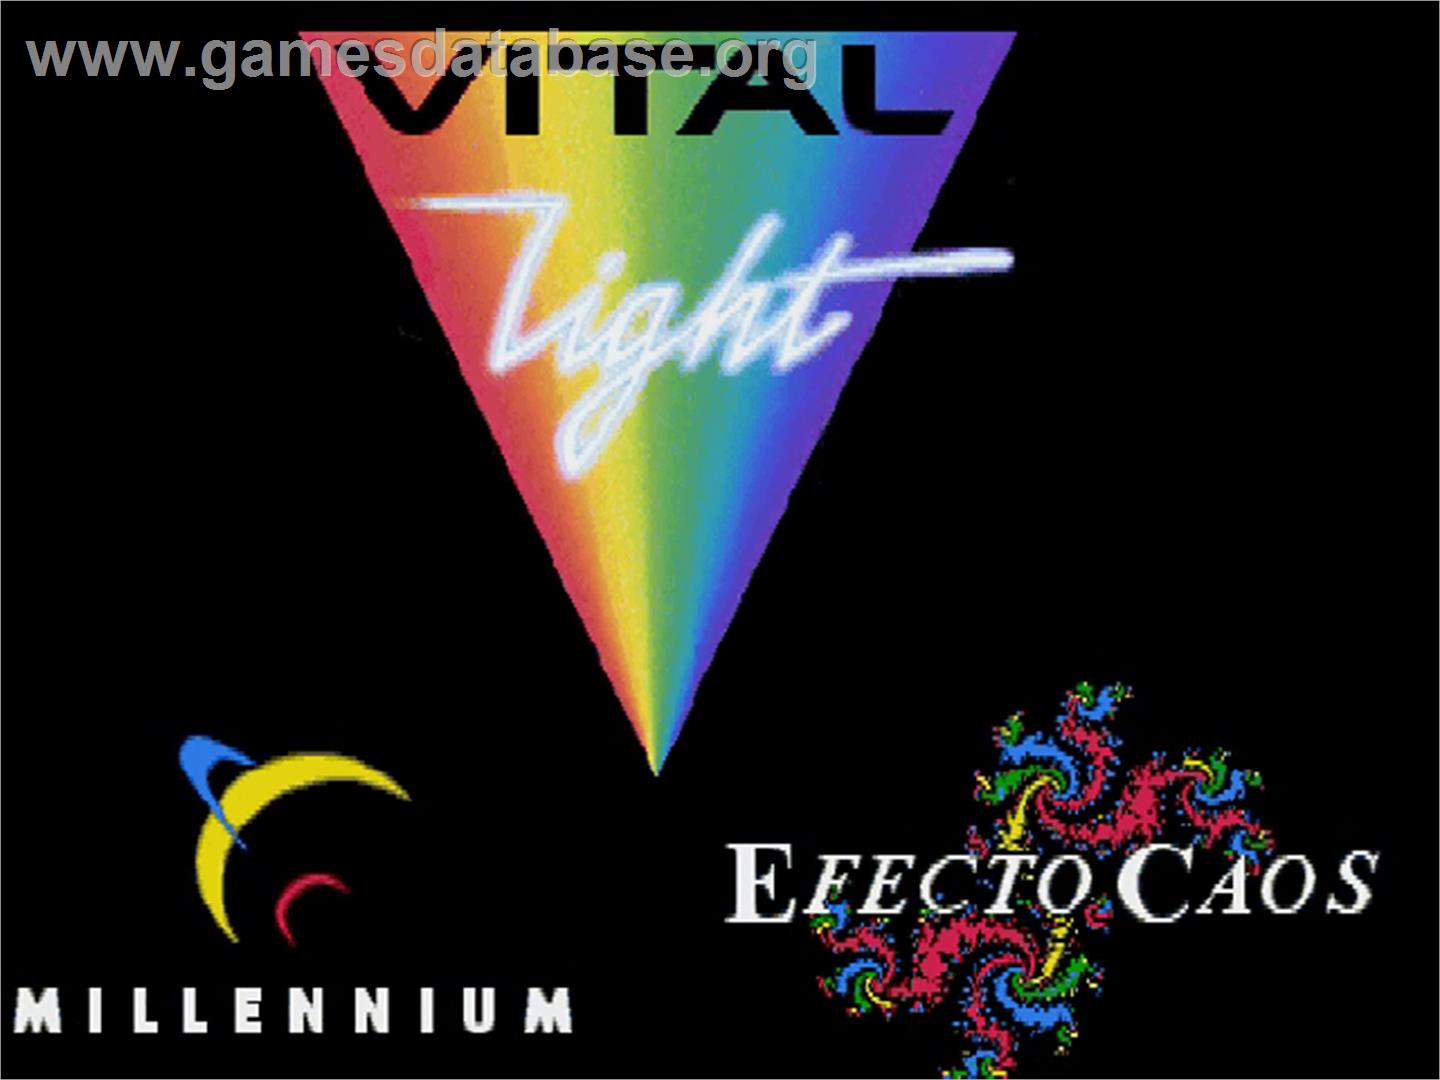 Vital Light - Commodore Amiga CD32 - Artwork - Title Screen